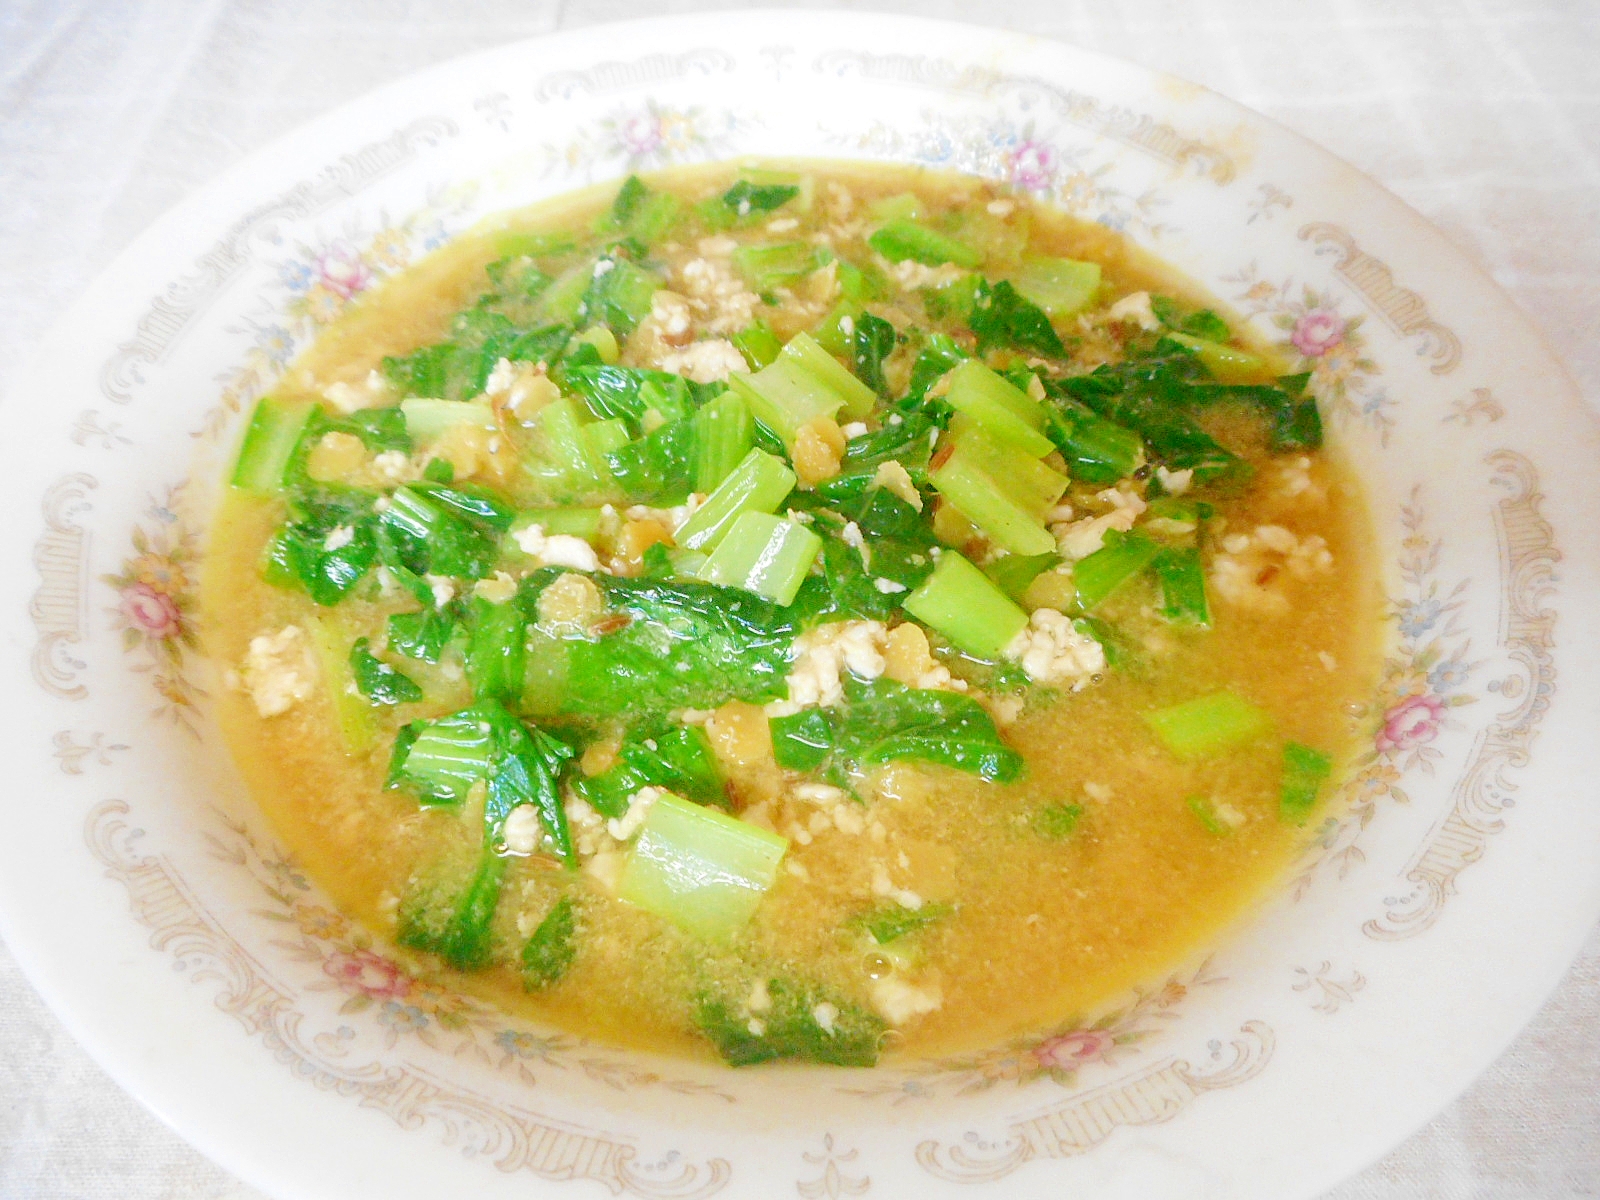 レンズ豆と小松菜、ひき肉のカレースープ